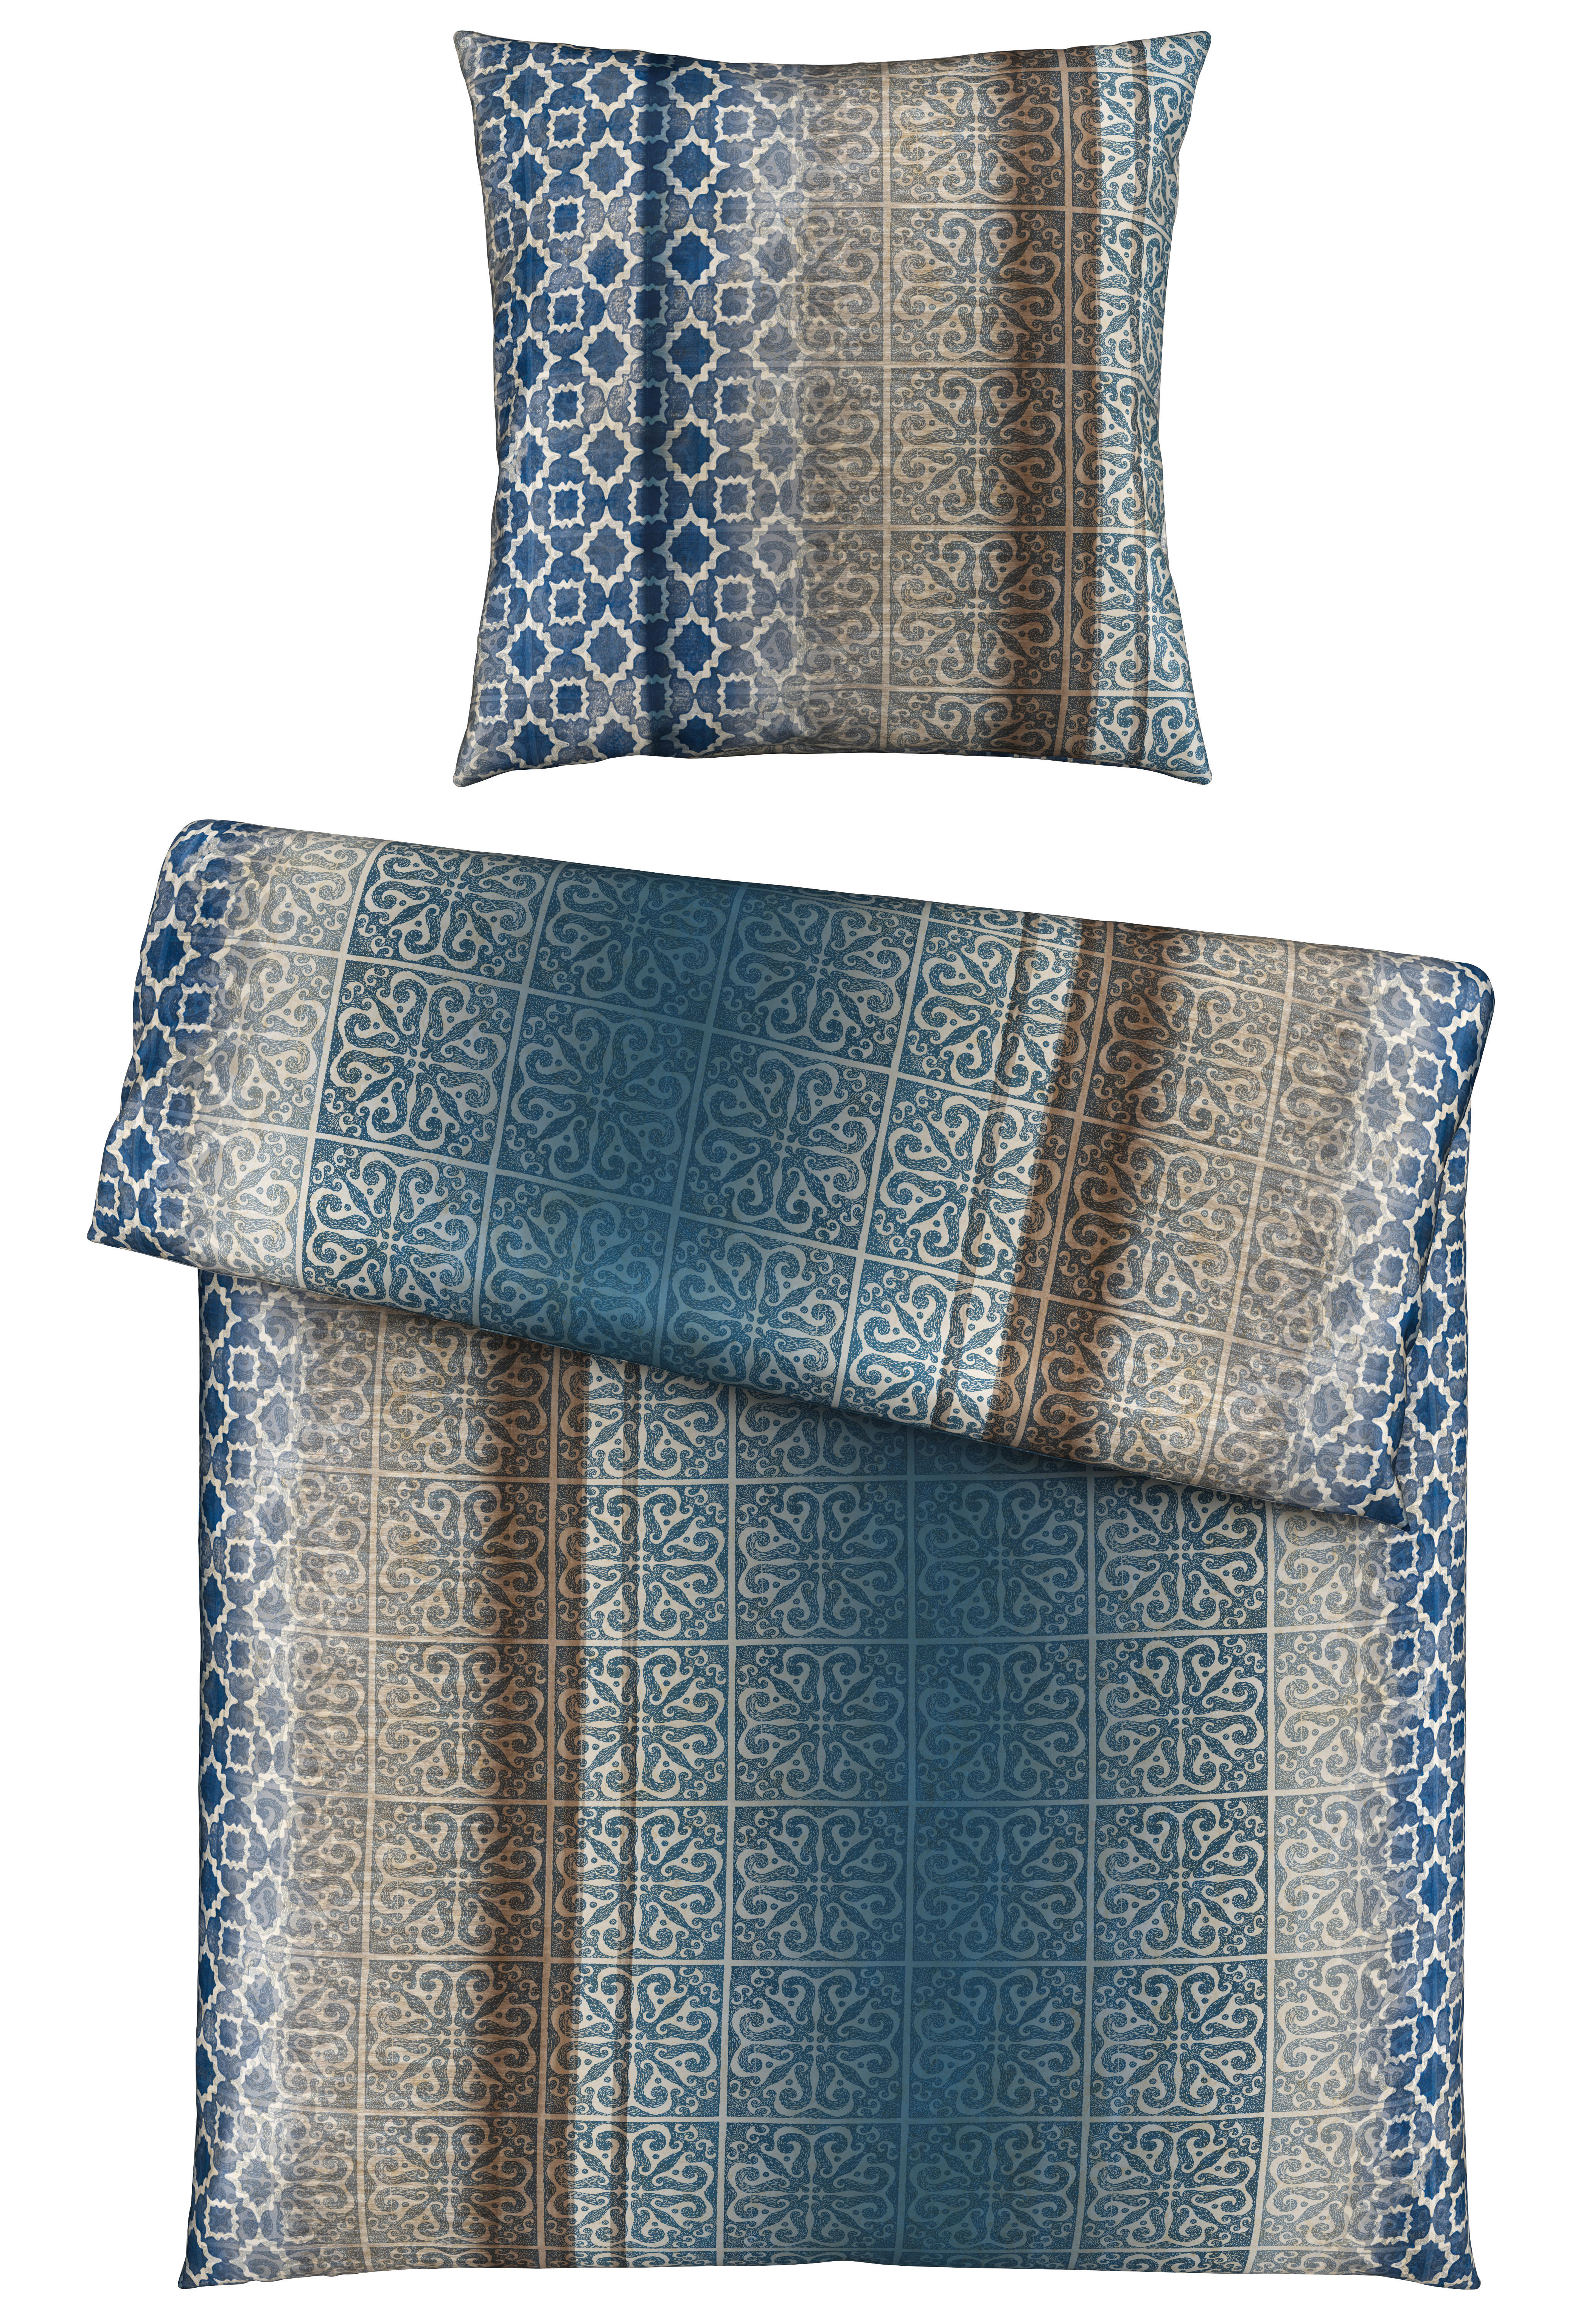 BETTWÄSCHE Satin  - Blau, KONVENTIONELL, Textil (155/220cm) - Esposa